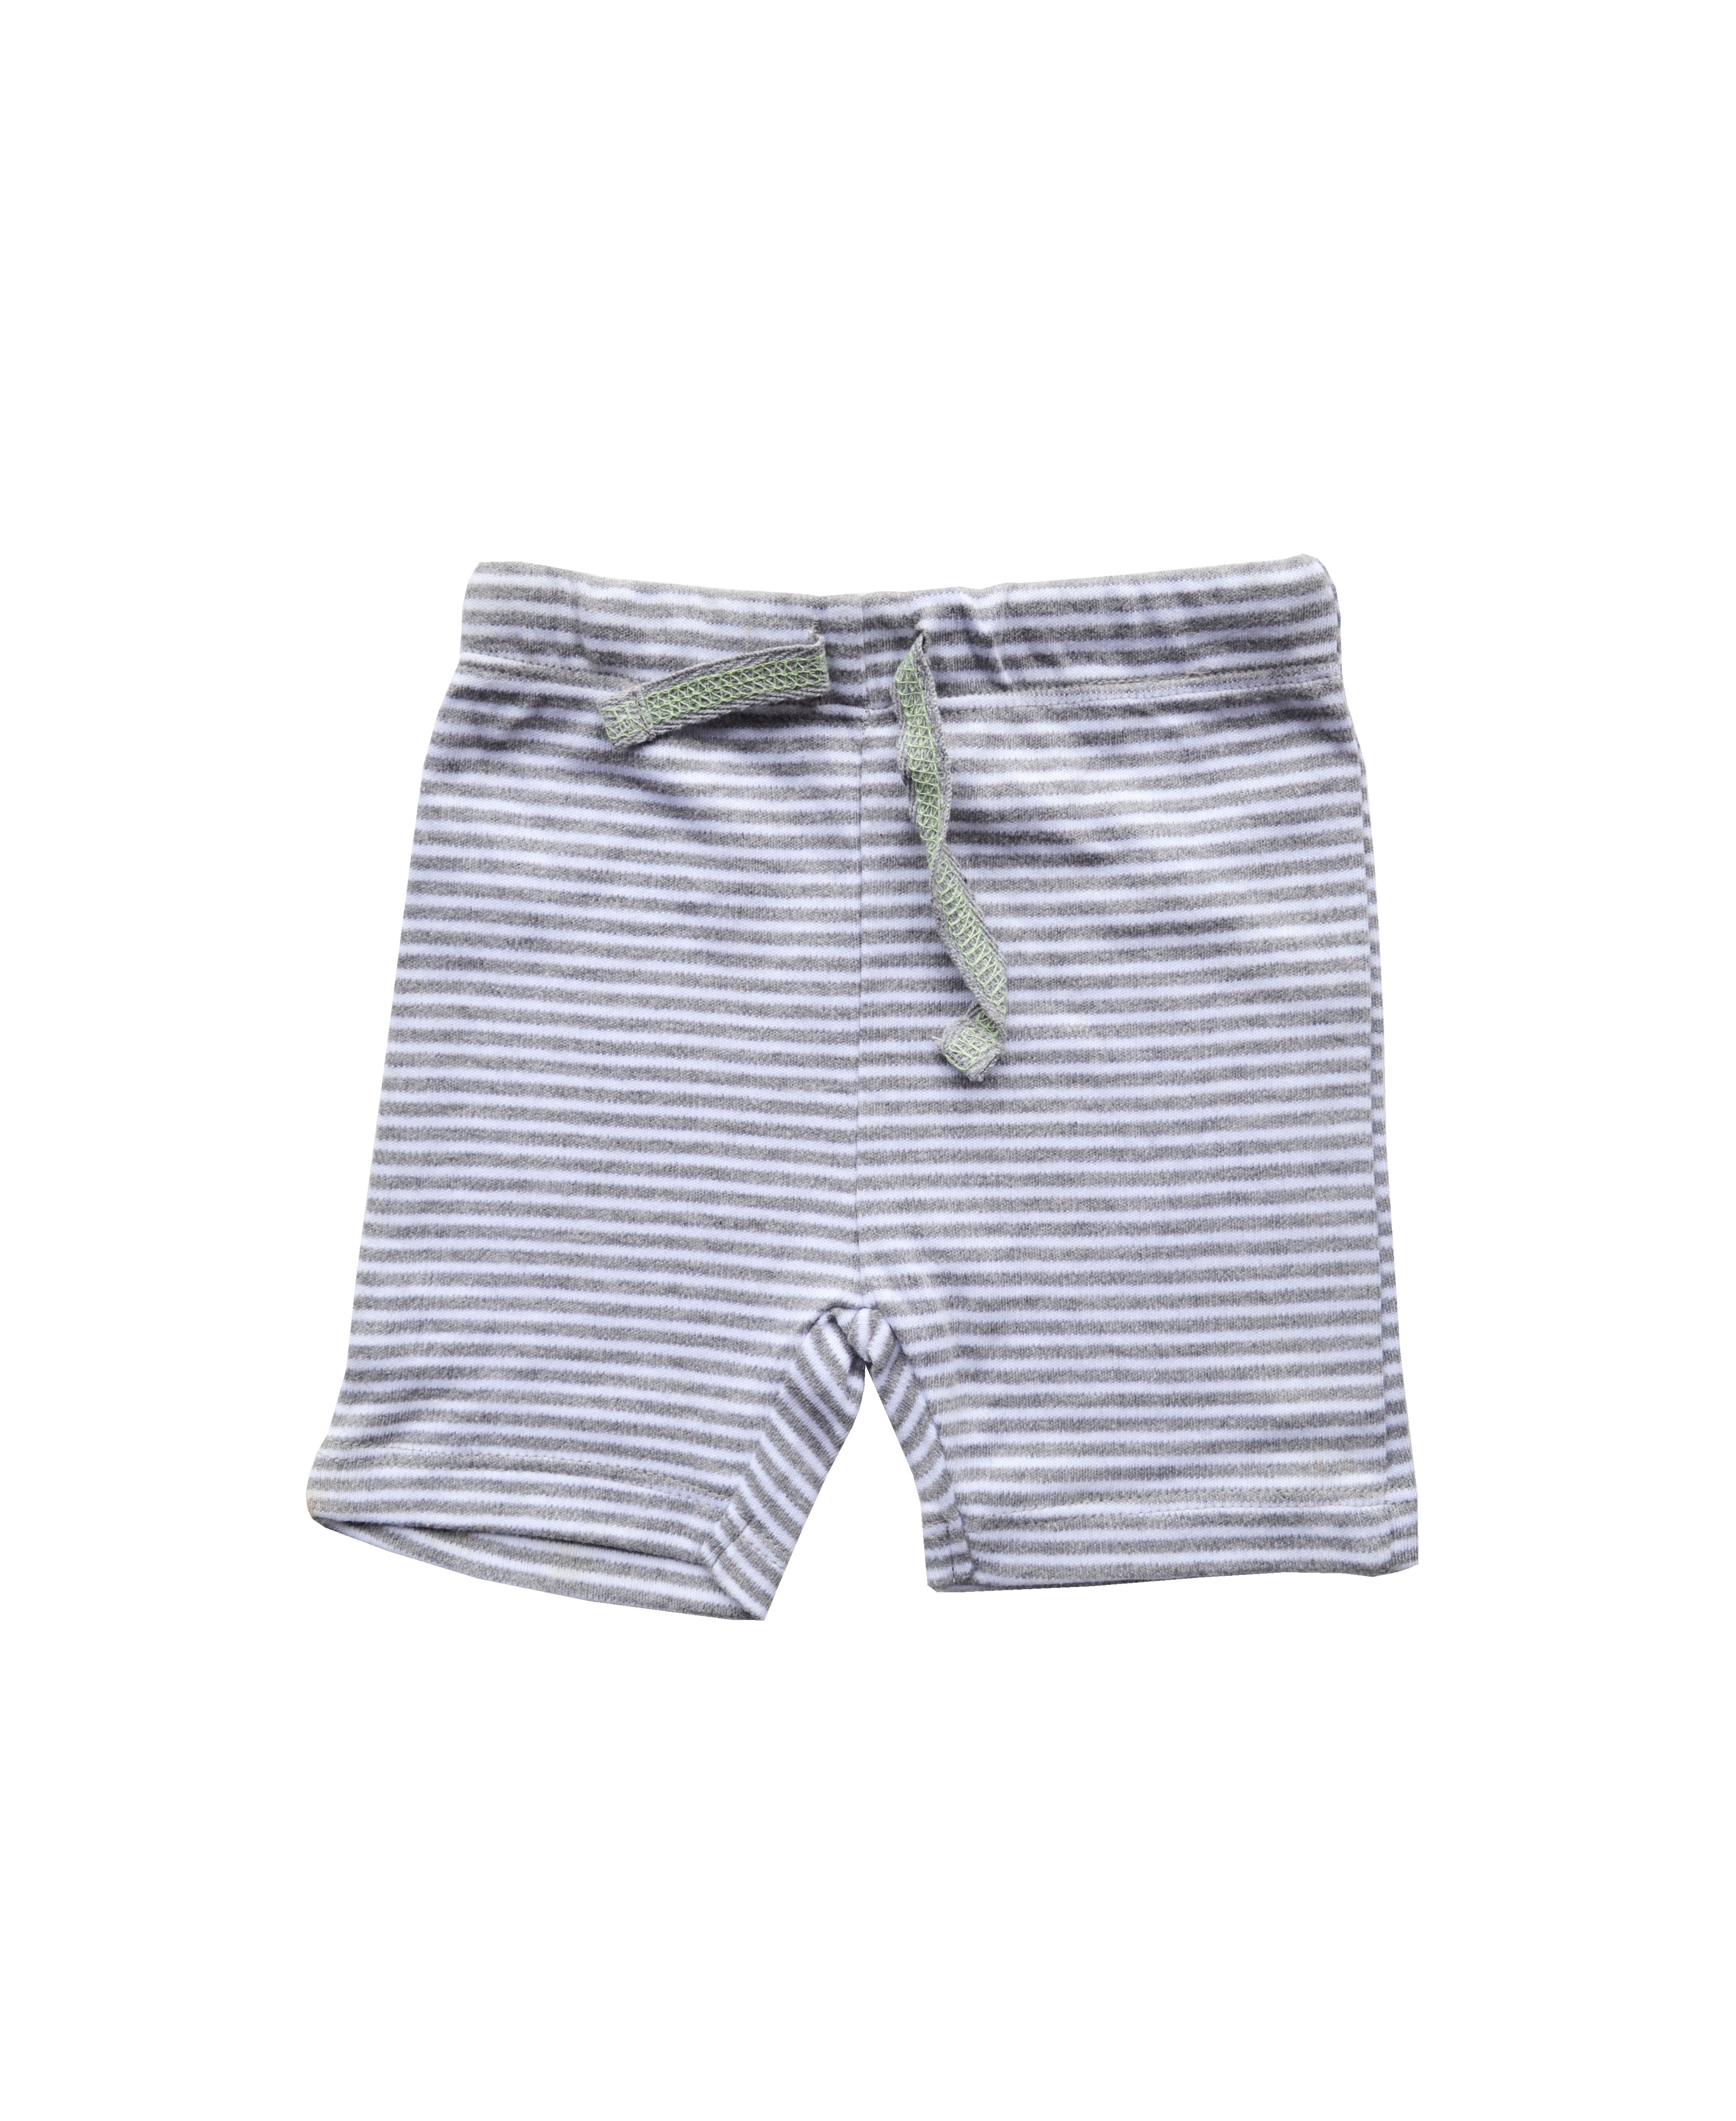 Babeez | Grey / White Stripes Shorts (100% Cotton Interlock Biowash) undefined